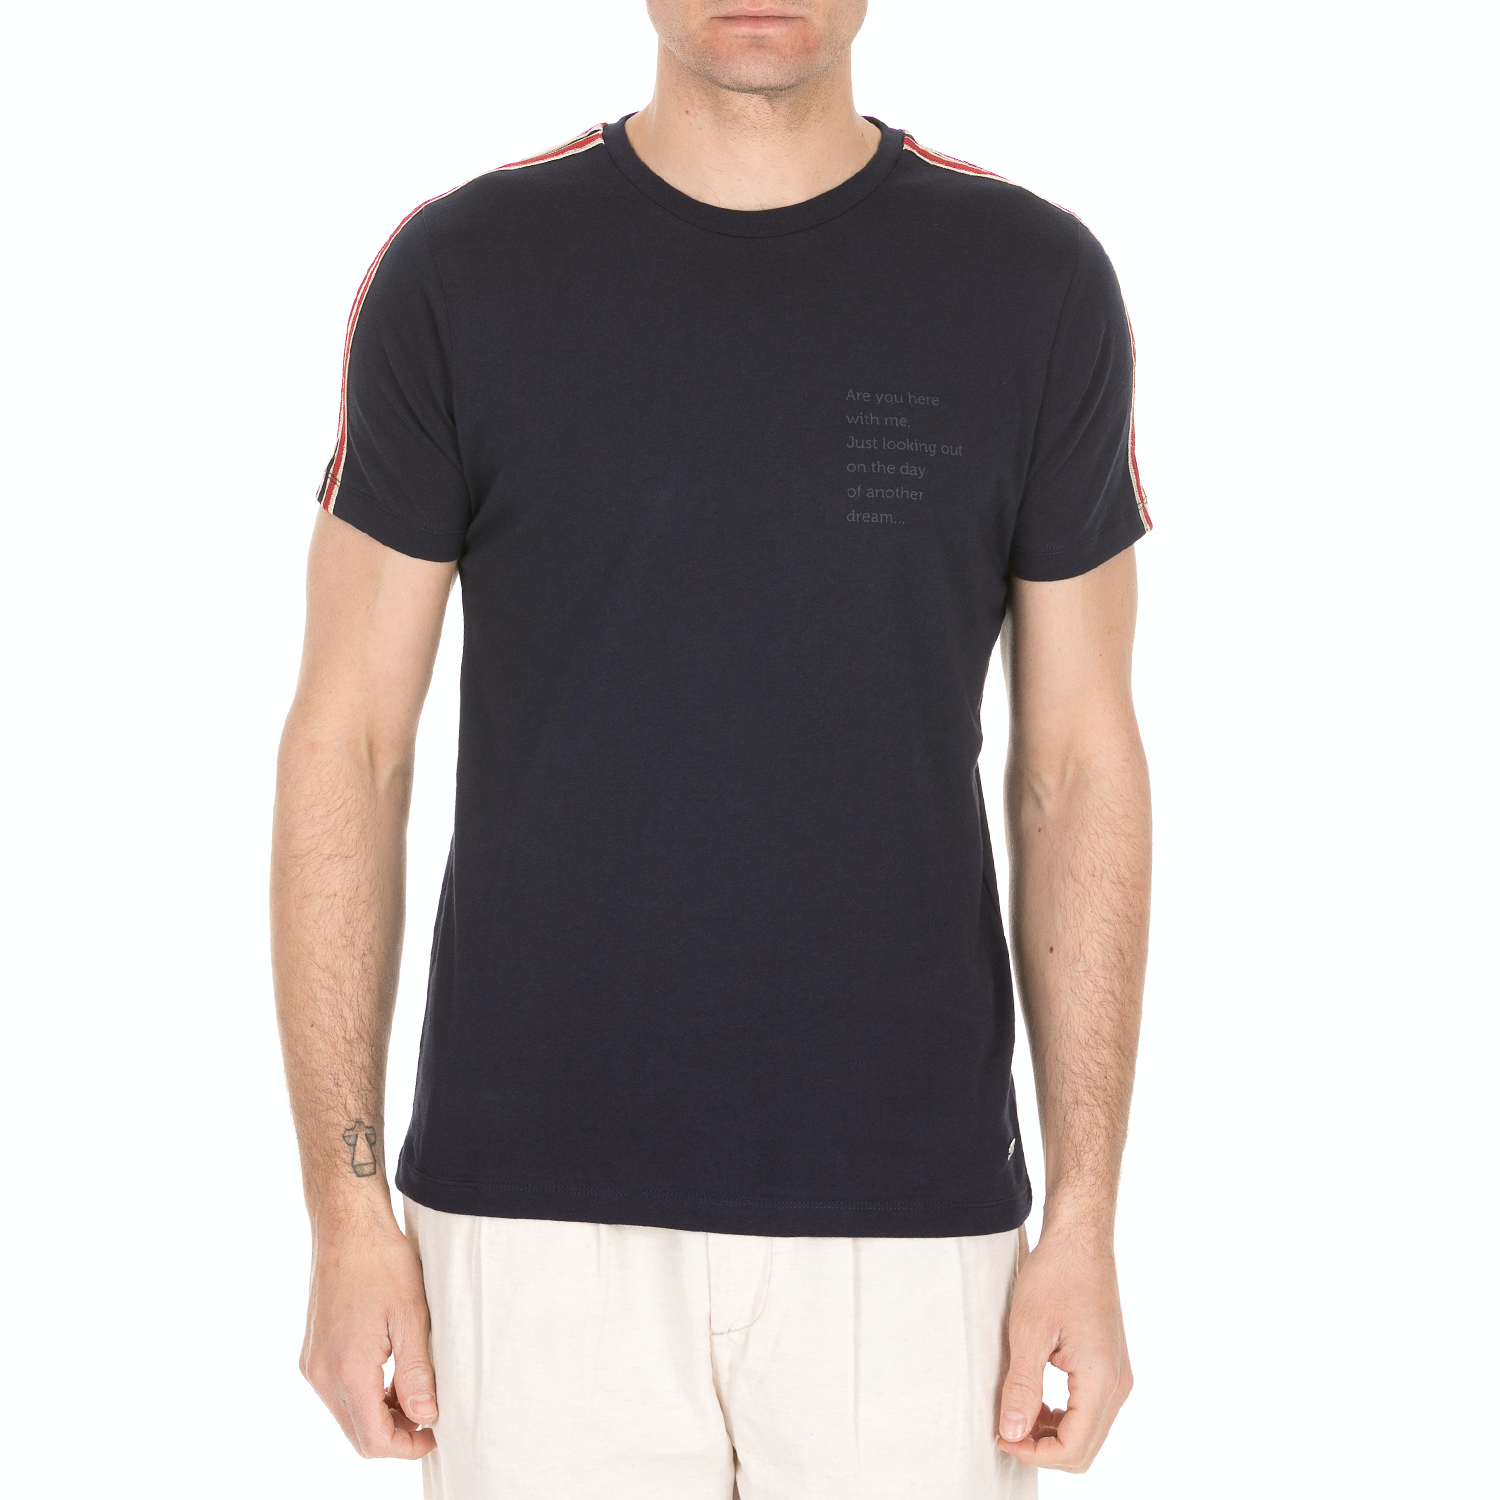 Ανδρικά/Ρούχα/Μπλούζες/Κοντομάνικες SSEINSE - Ανδρική κοντομάνικη μπλούζα SSEINSE μπλε